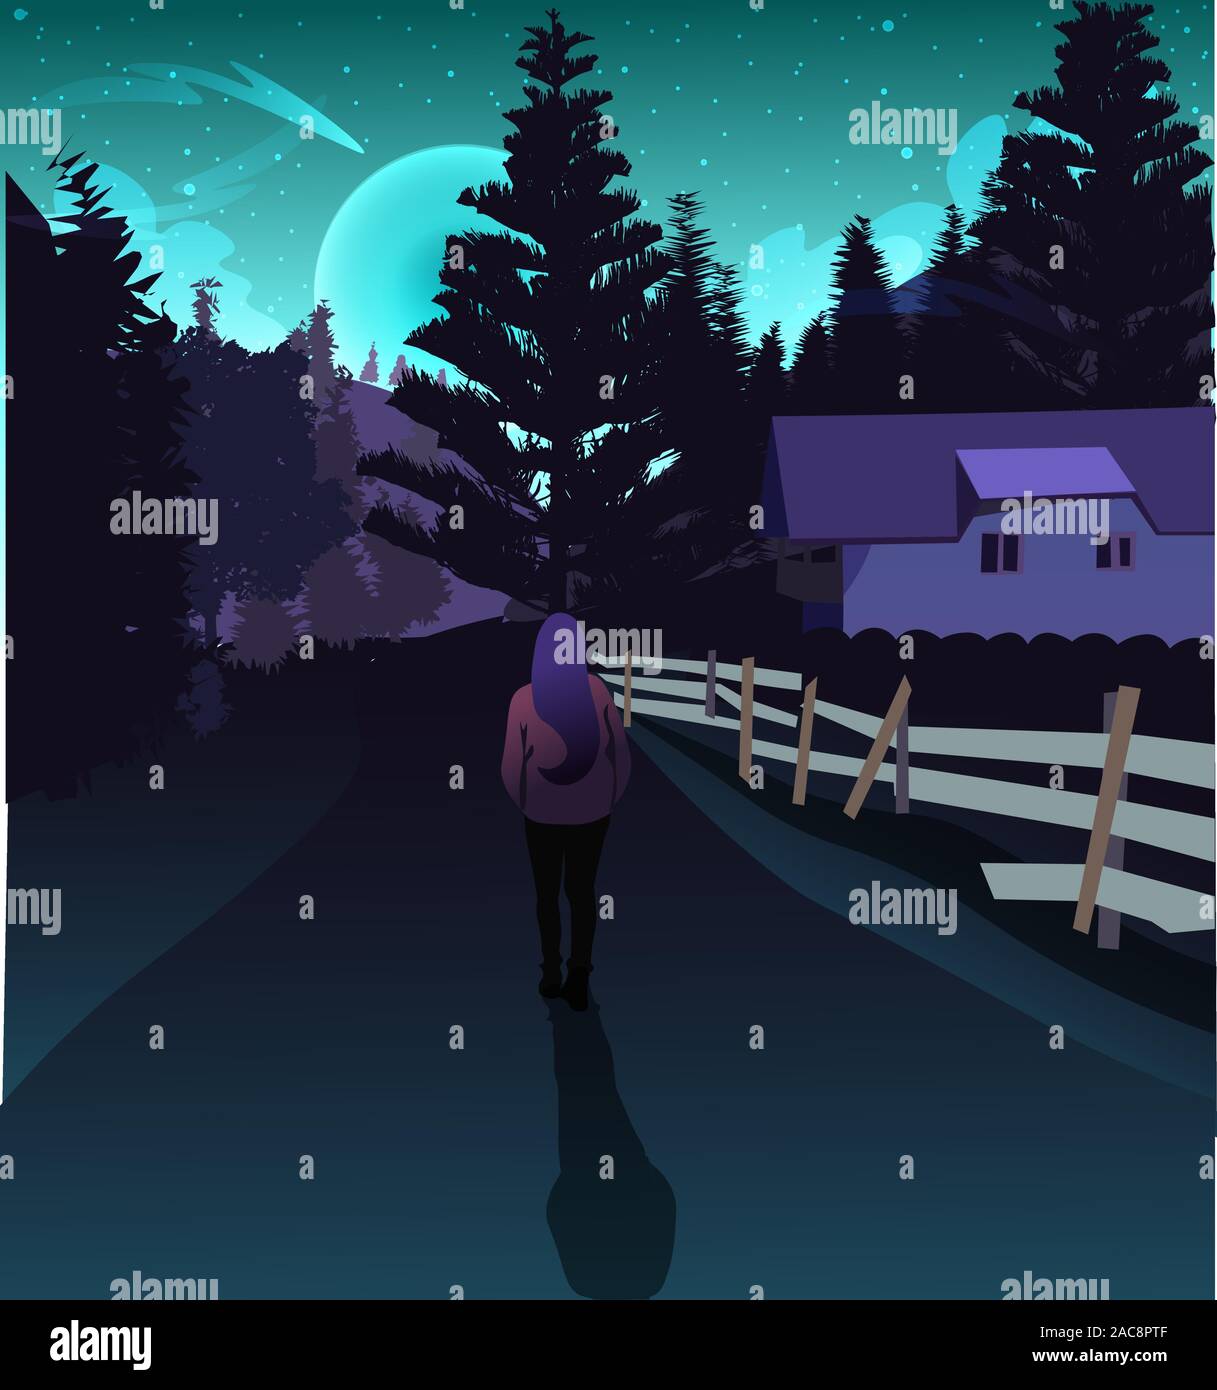 Femme voyageant dans une forêt de montagne sous le crépuscule et lumières de l'aurore boréale. Bleu et violet magique néon modernes northern lights illustrat Illustration de Vecteur